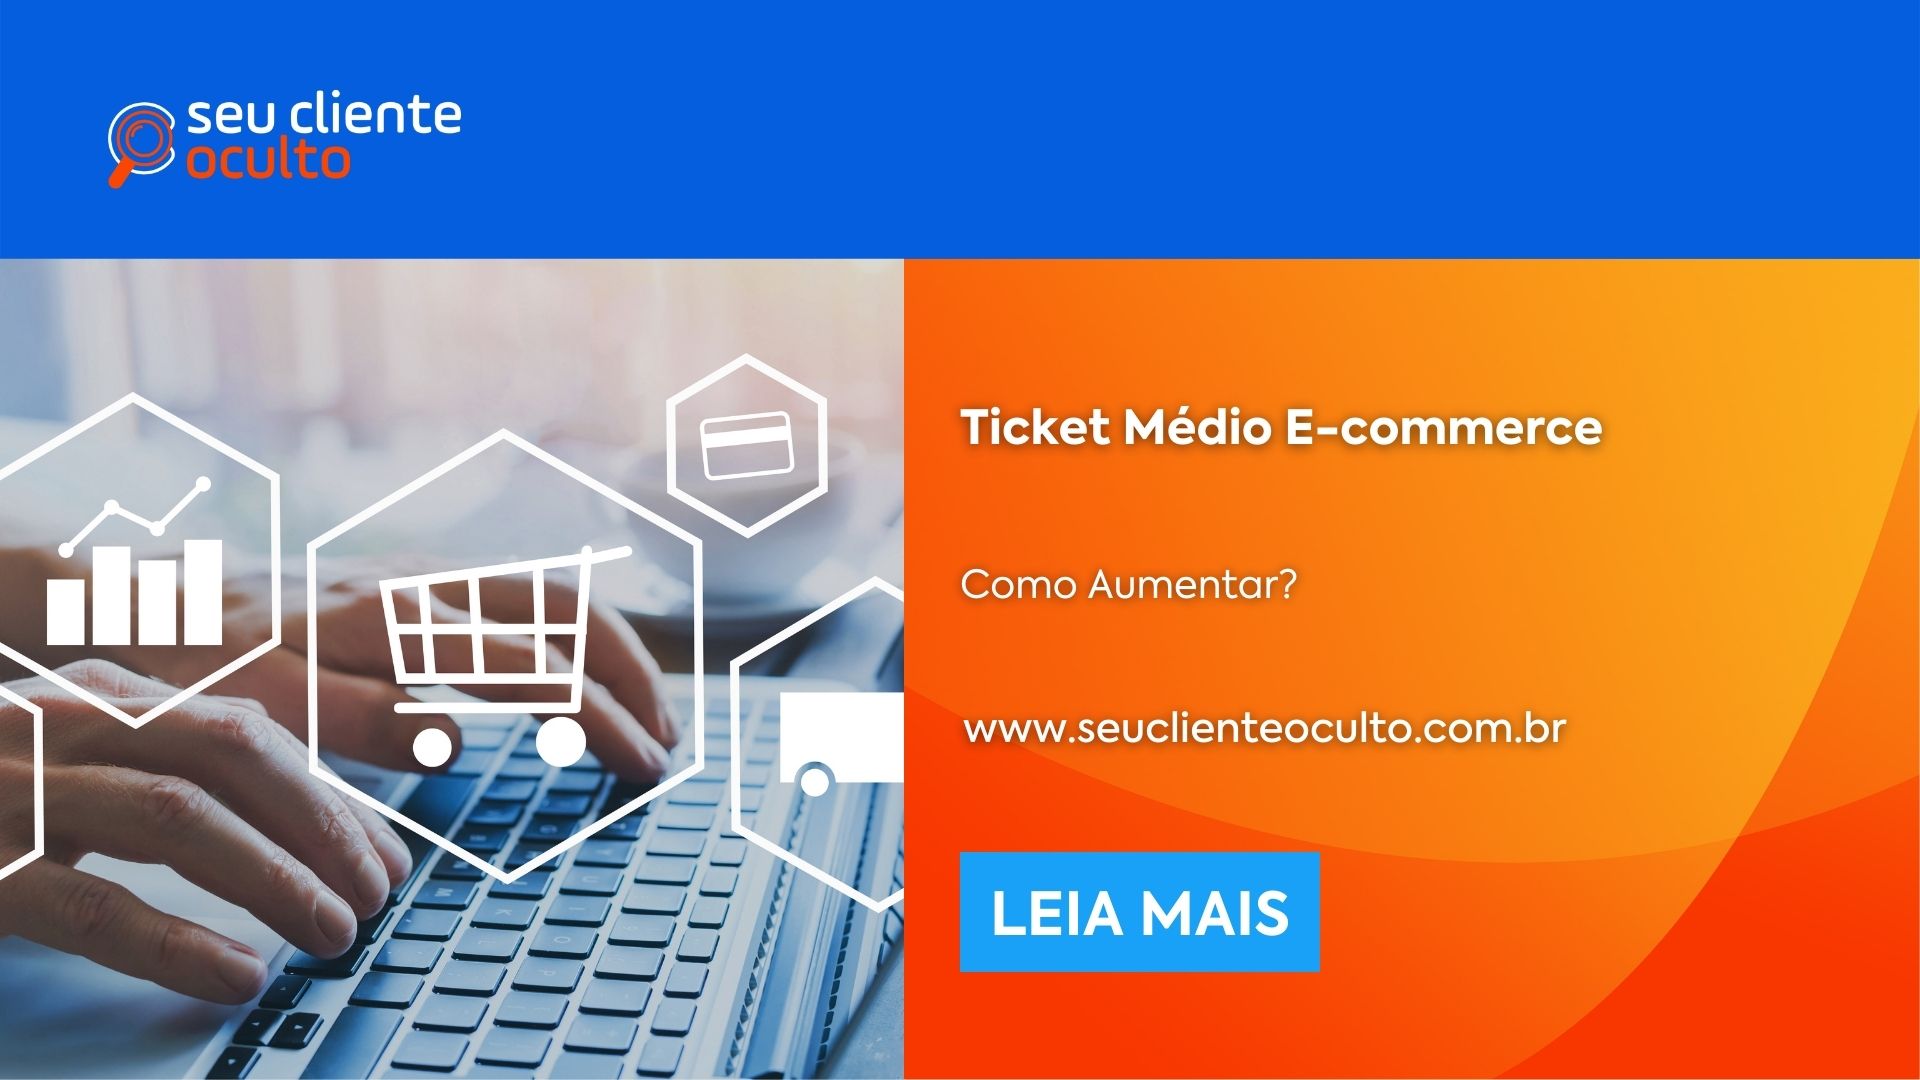 Ticket Médio E-commerce: Como Aumentar?